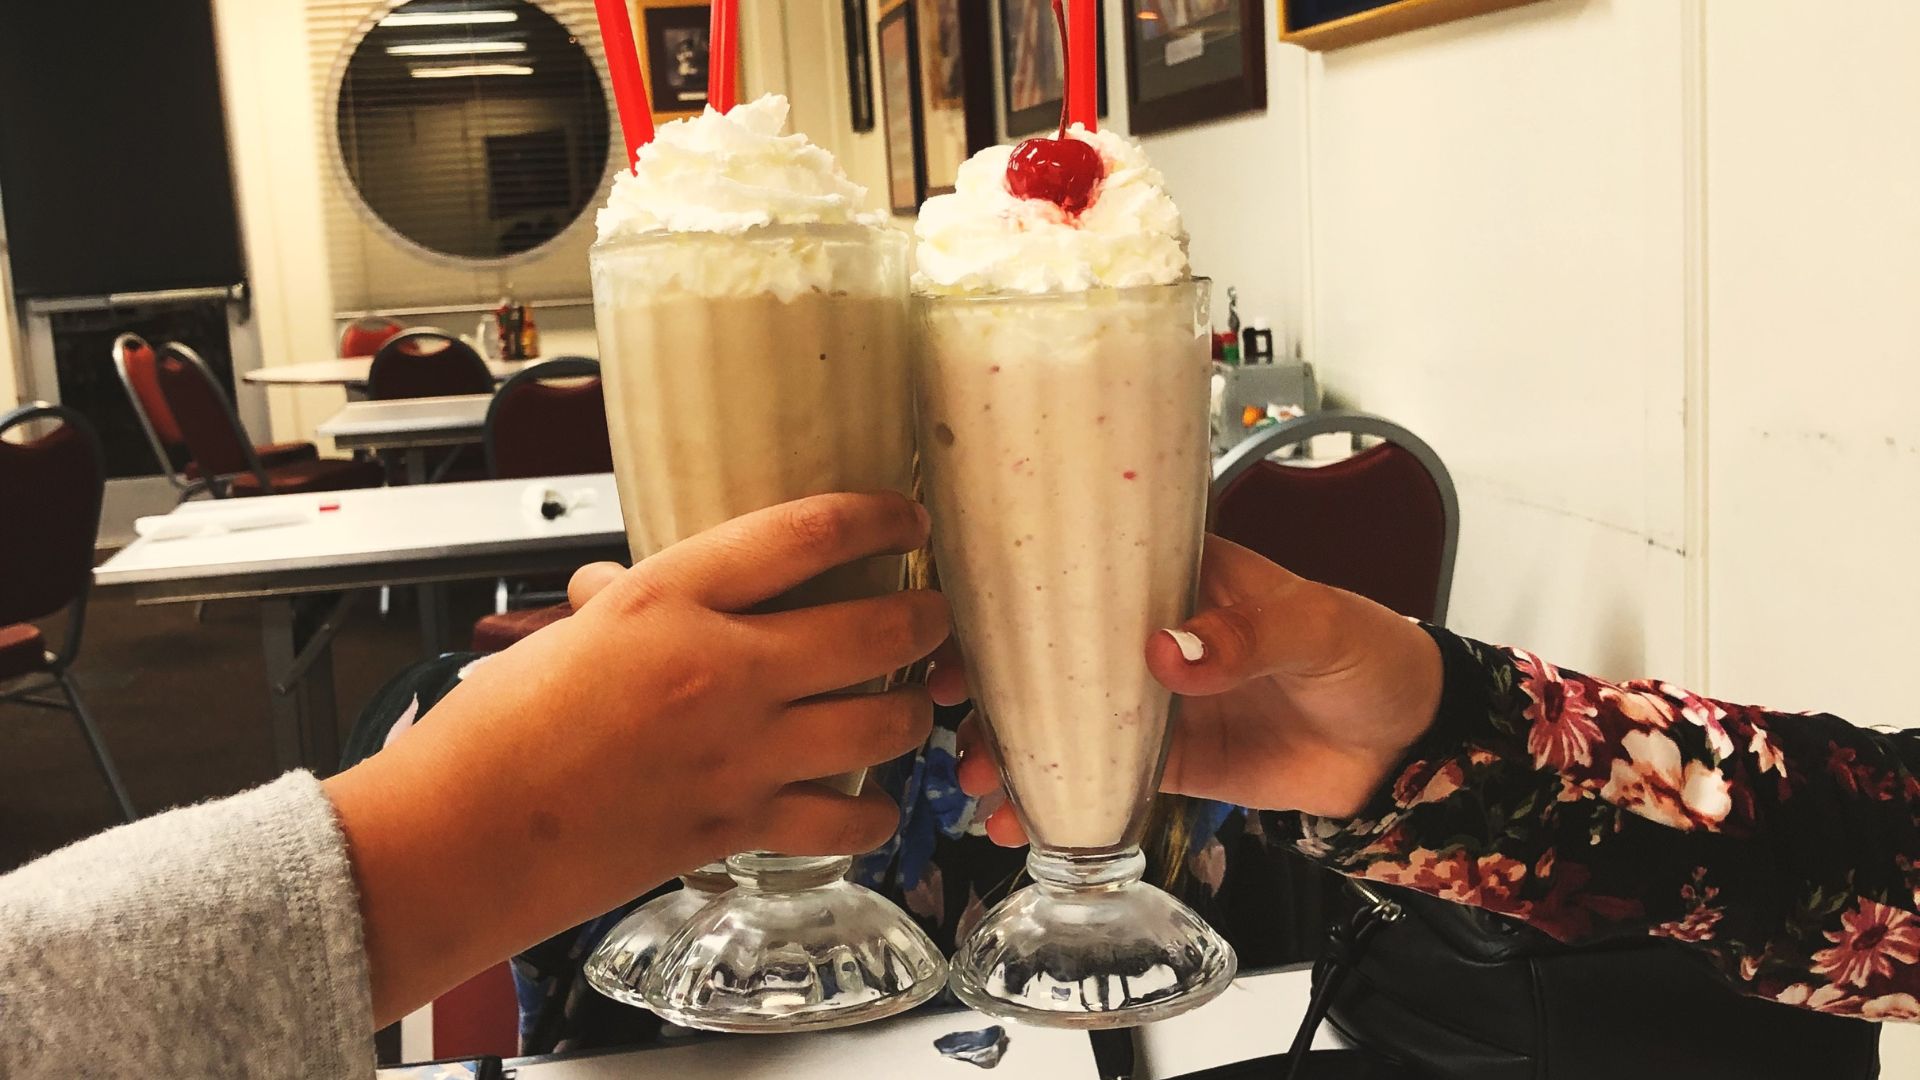 Três pessoas morrem após tomar milkshake contaminado em restaurante nos EUA